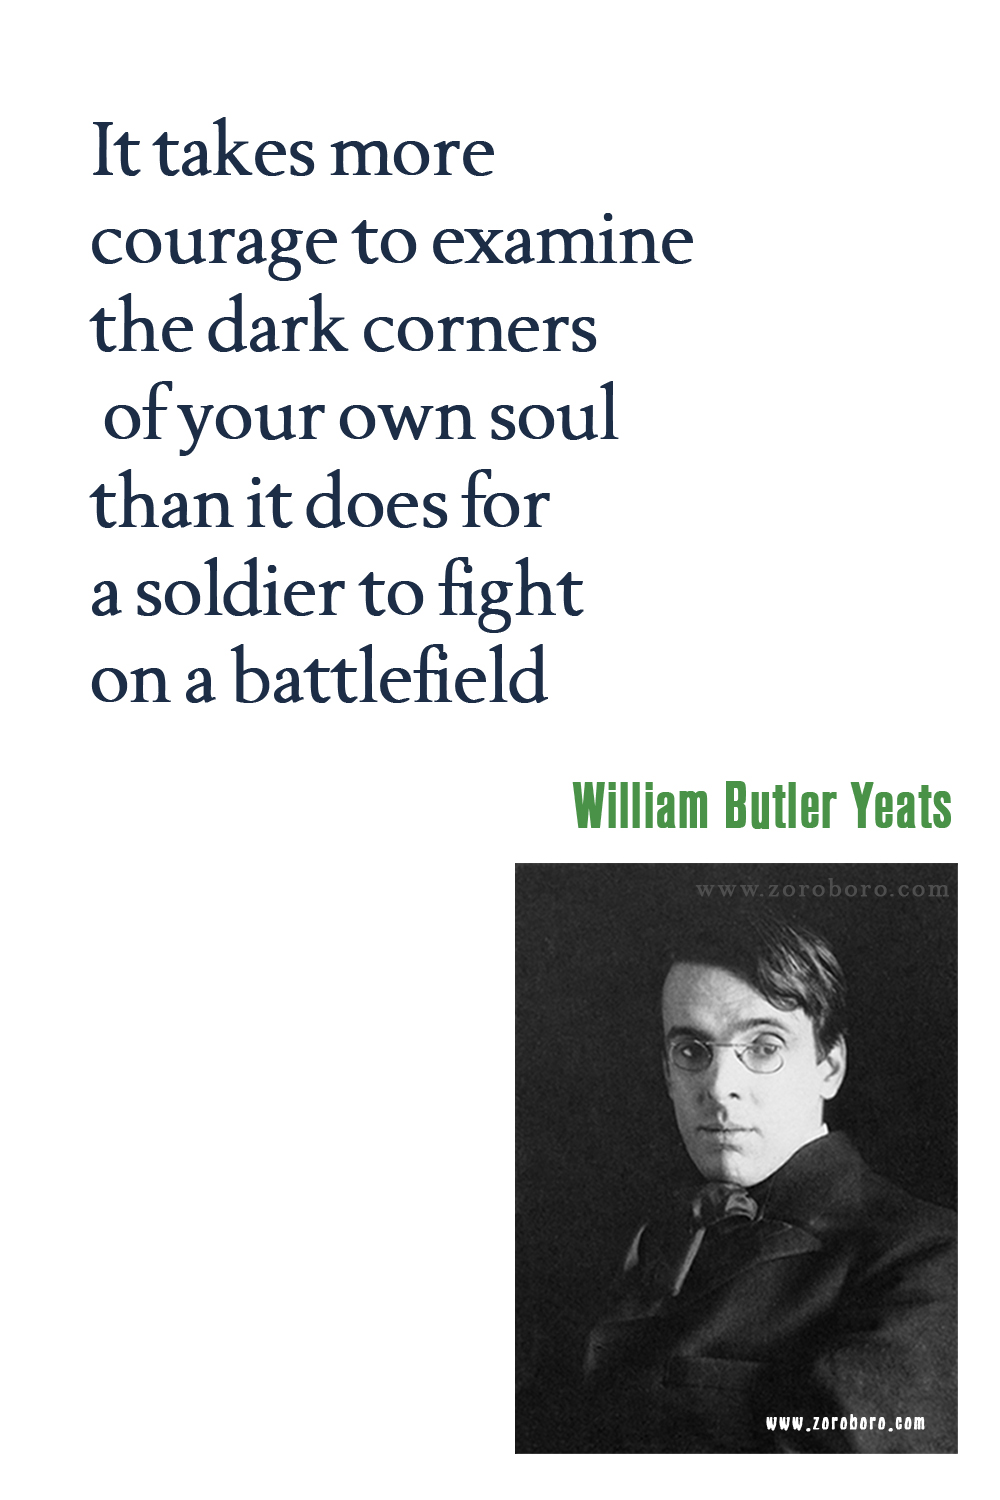 William Butler Yeats Quotes, William Butler Yeats Poems, William Butler Yeats Books Quotes, Poetry, William Butler Yeats Pictures, W. B. Yeats Quotes.